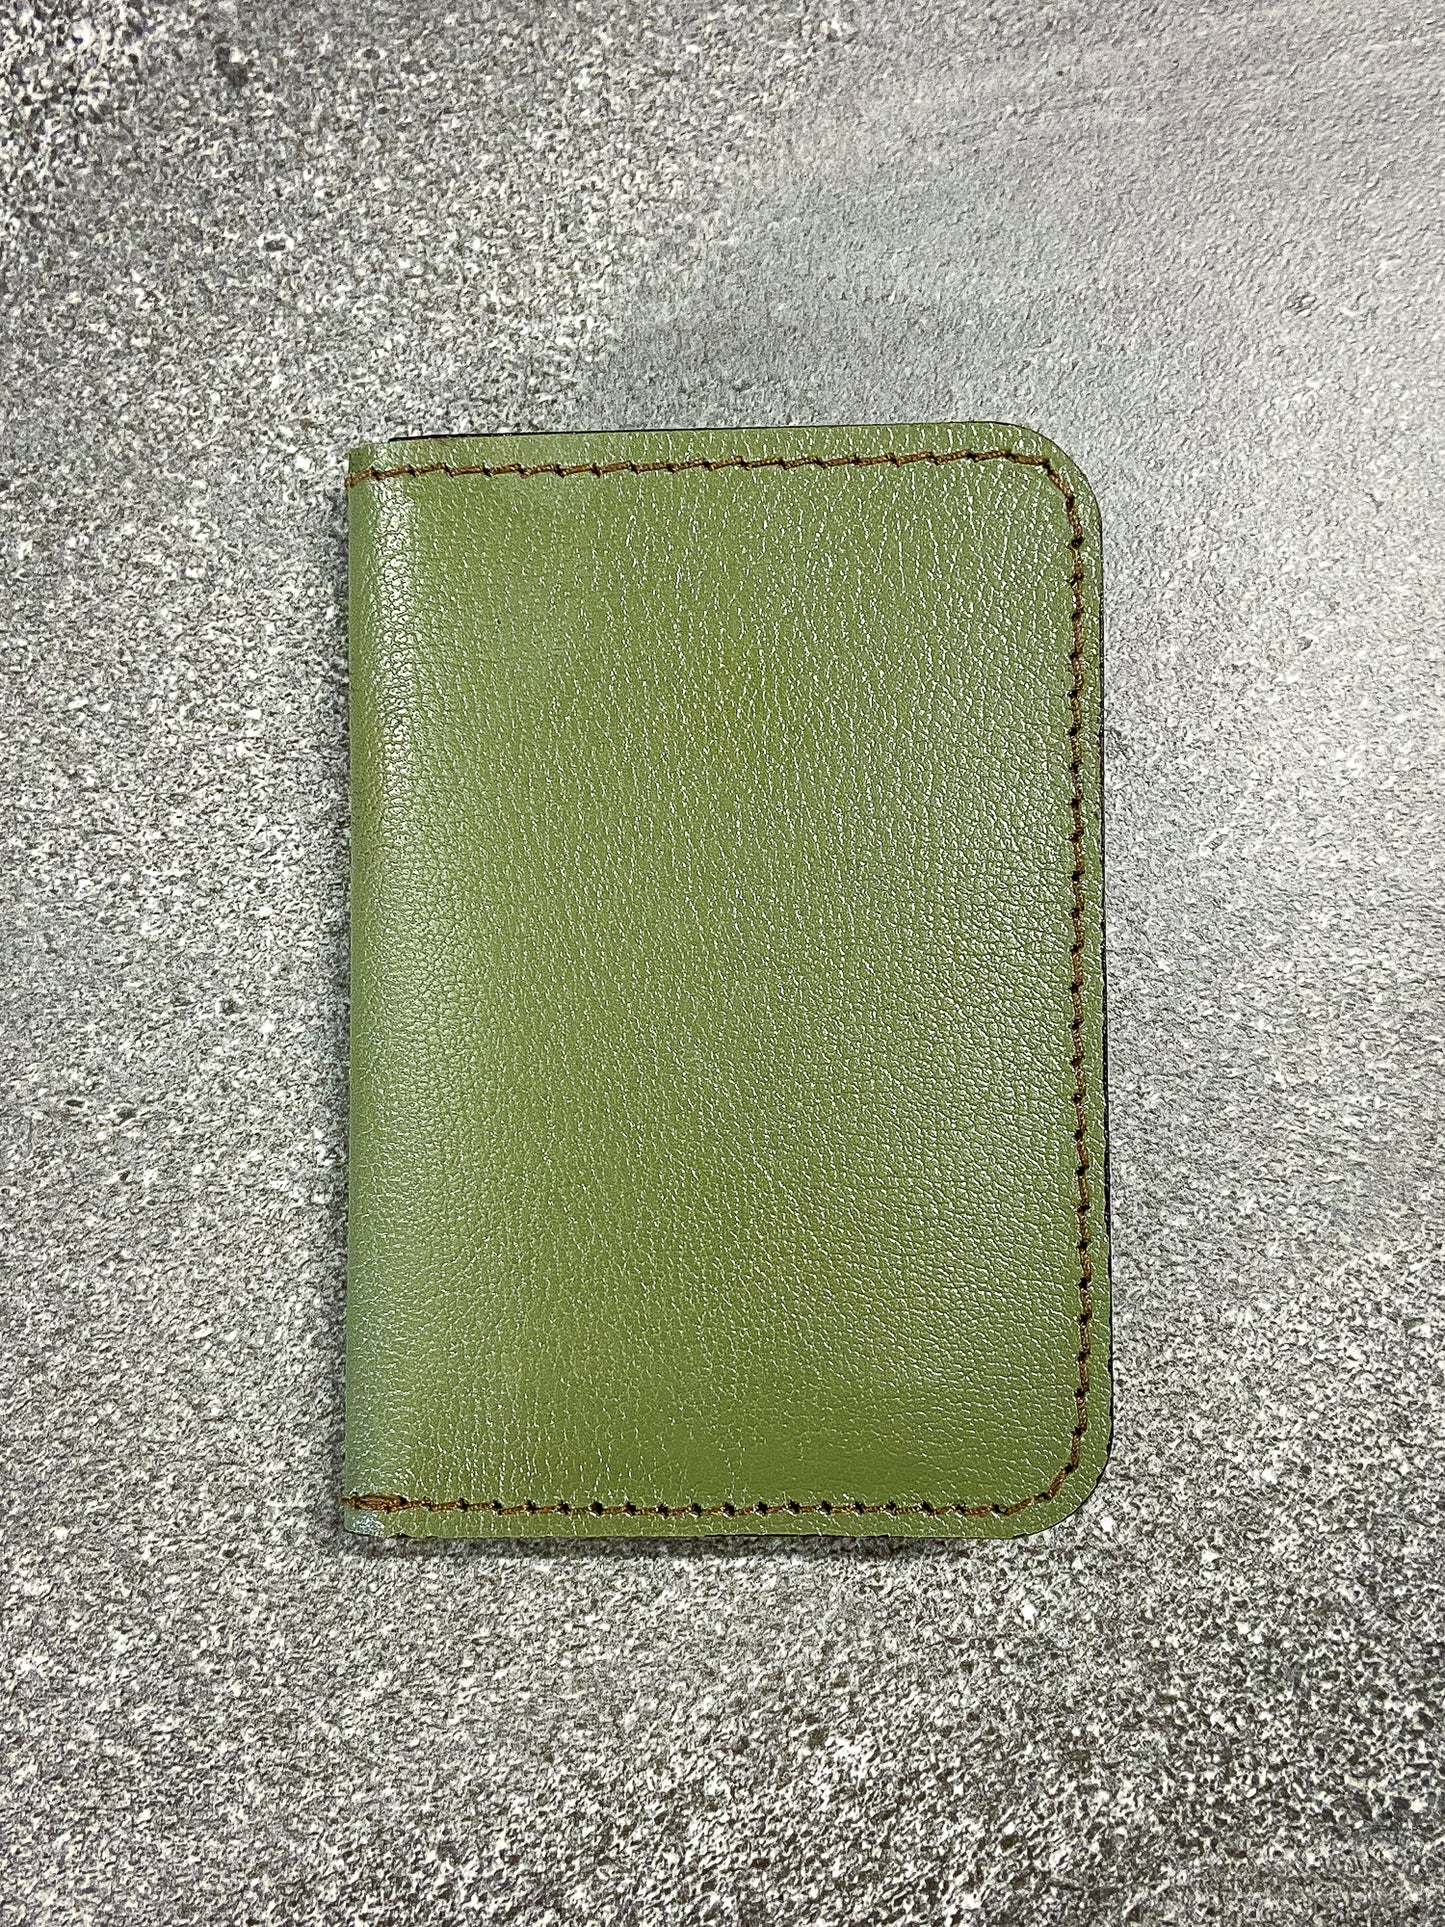 Kangaroo leather card wallet